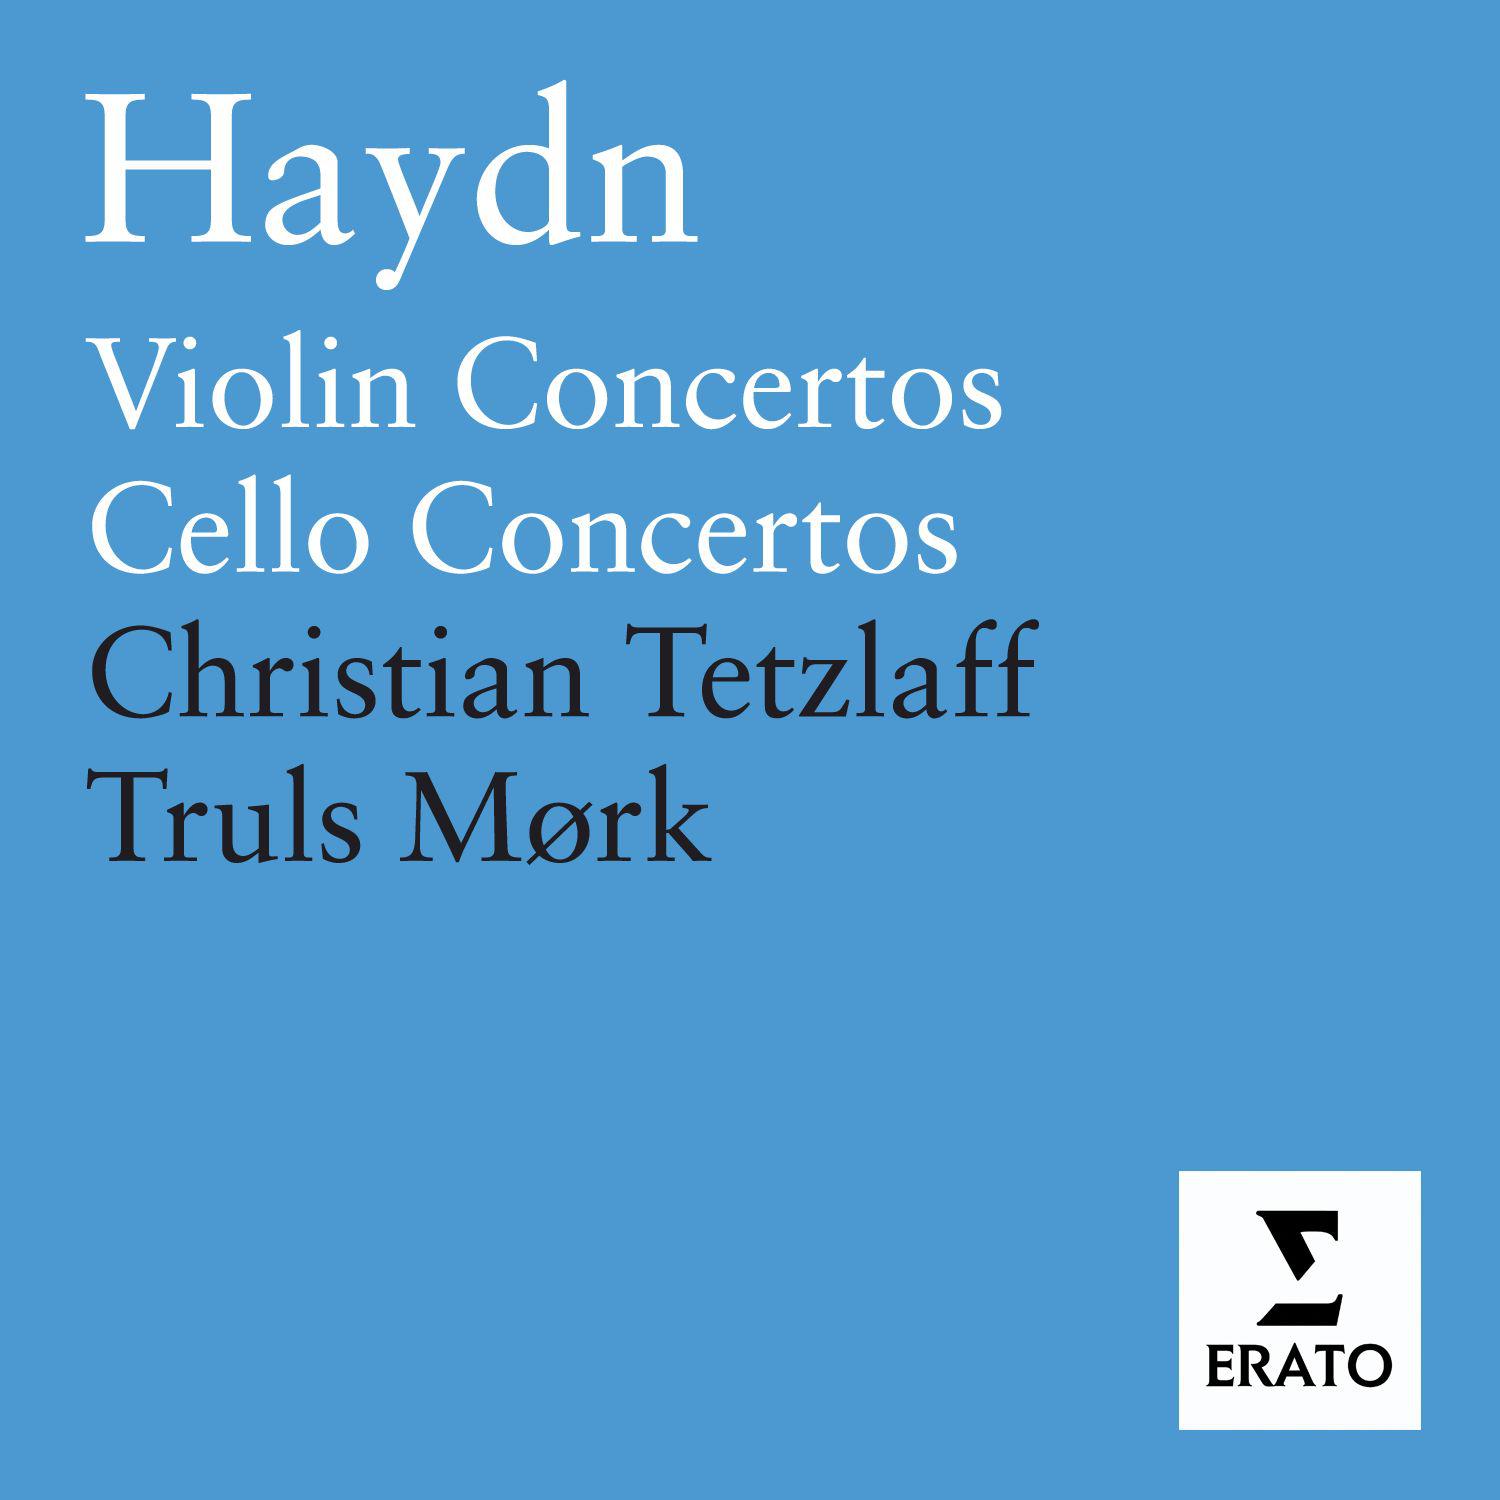 Rondo for Violin in C Major, K. 373